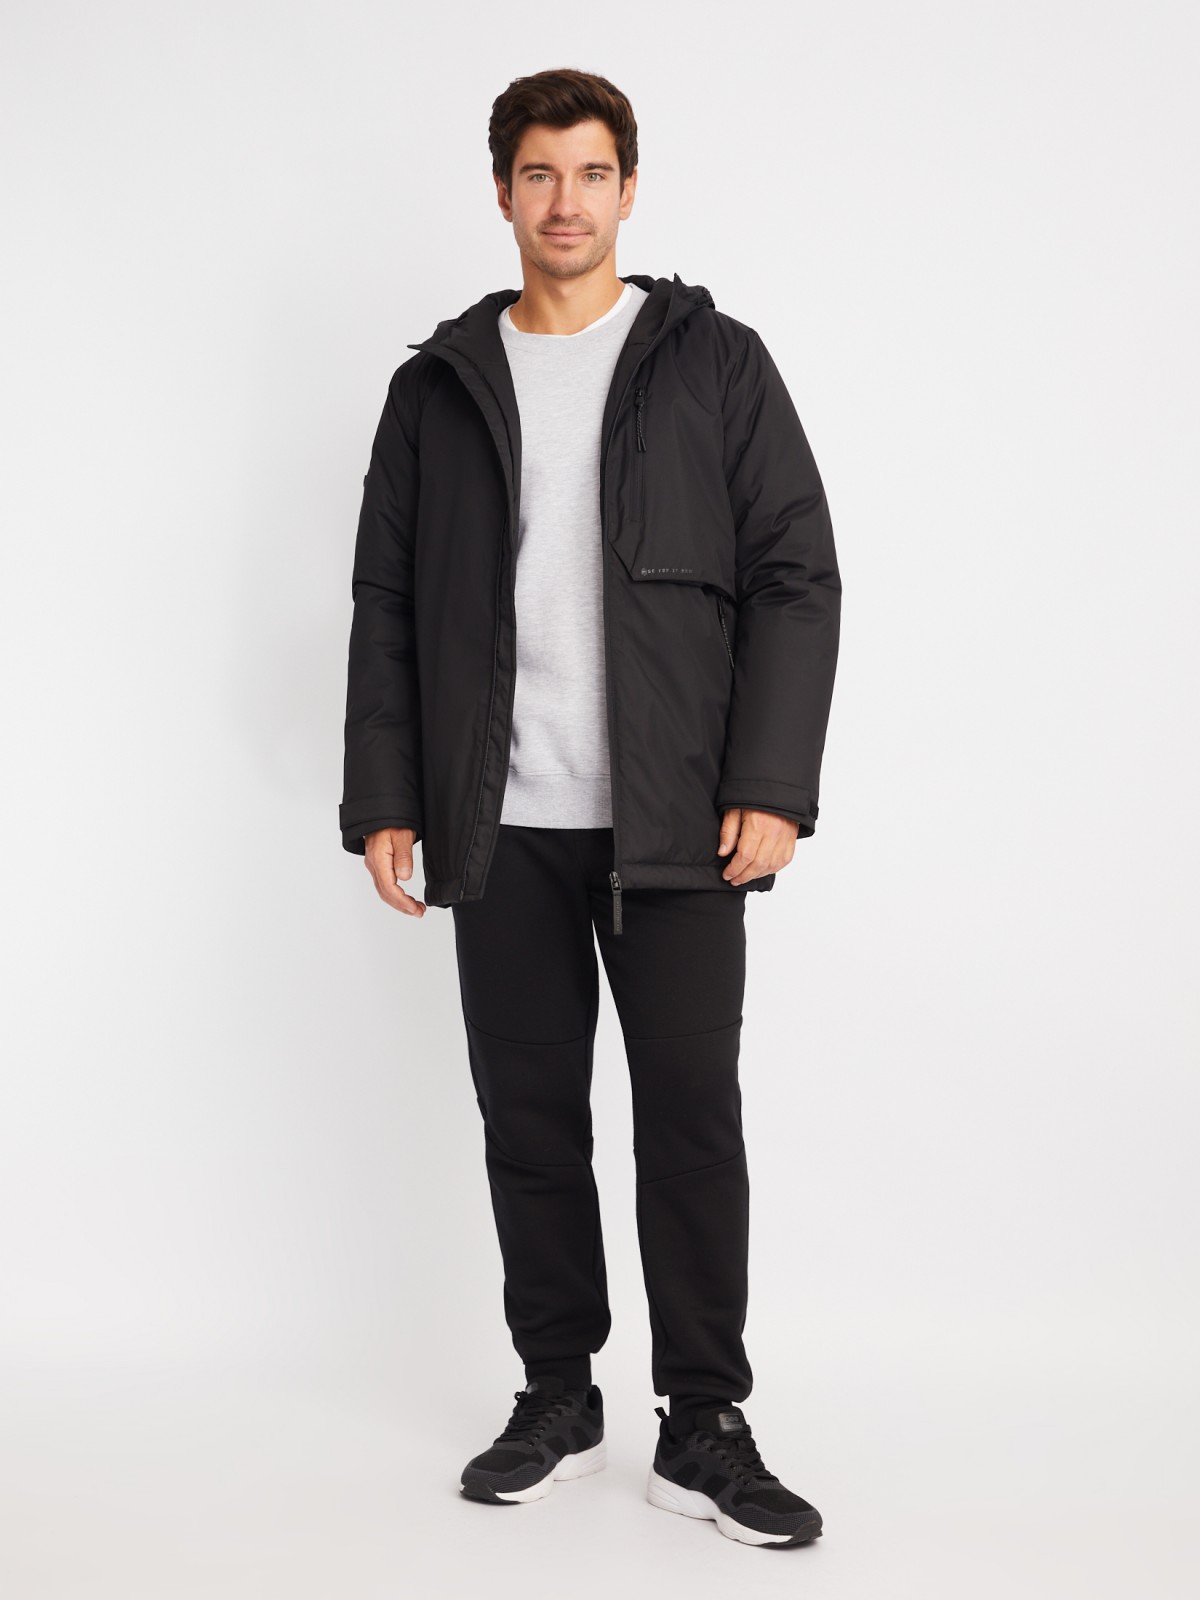 Тёплая куртка с капюшоном на синтепоне zolla 01412510L124, цвет черный, размер M - фото 2